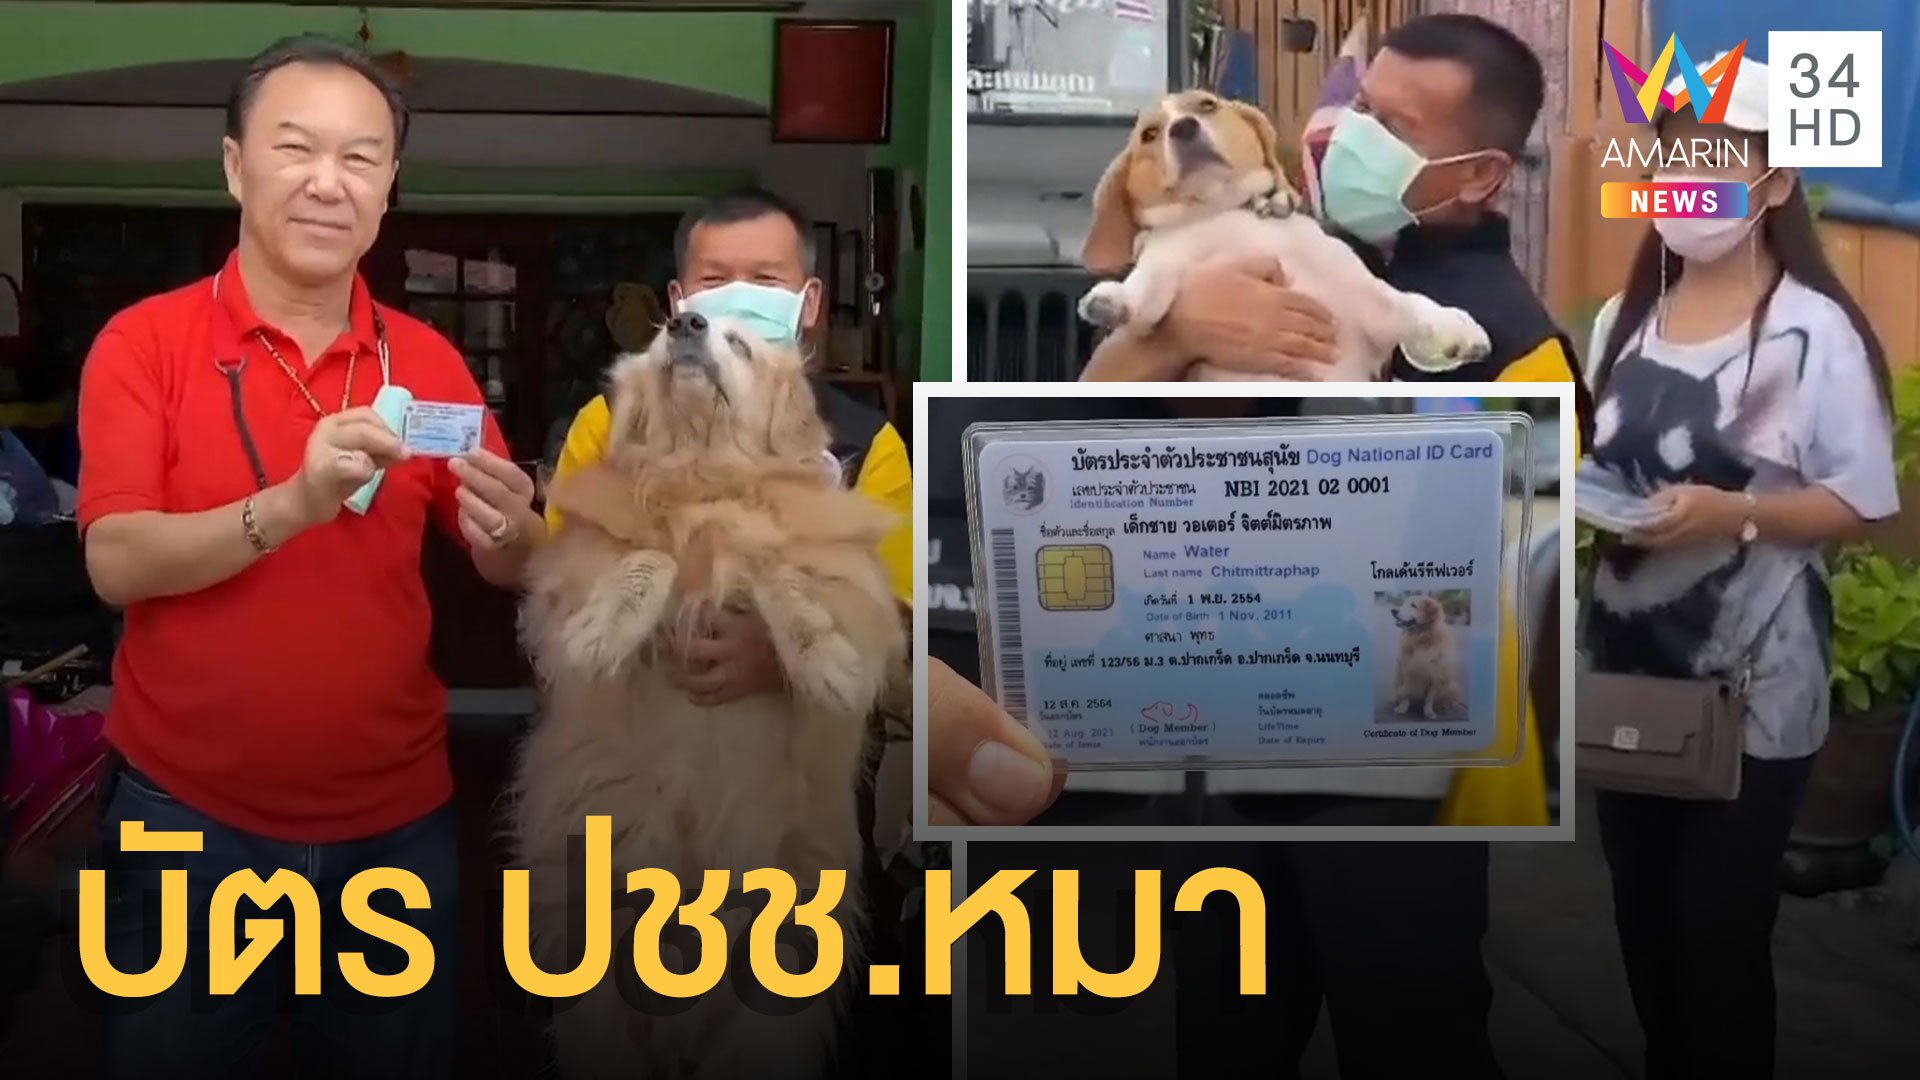 วันสุนัขโลก คนรักหมาใจบุญทำบัตร ปชช.ให้หมา | ข่าวอรุณอมรินทร์ | 27 ส.ค. 64 | AMARIN TVHD34